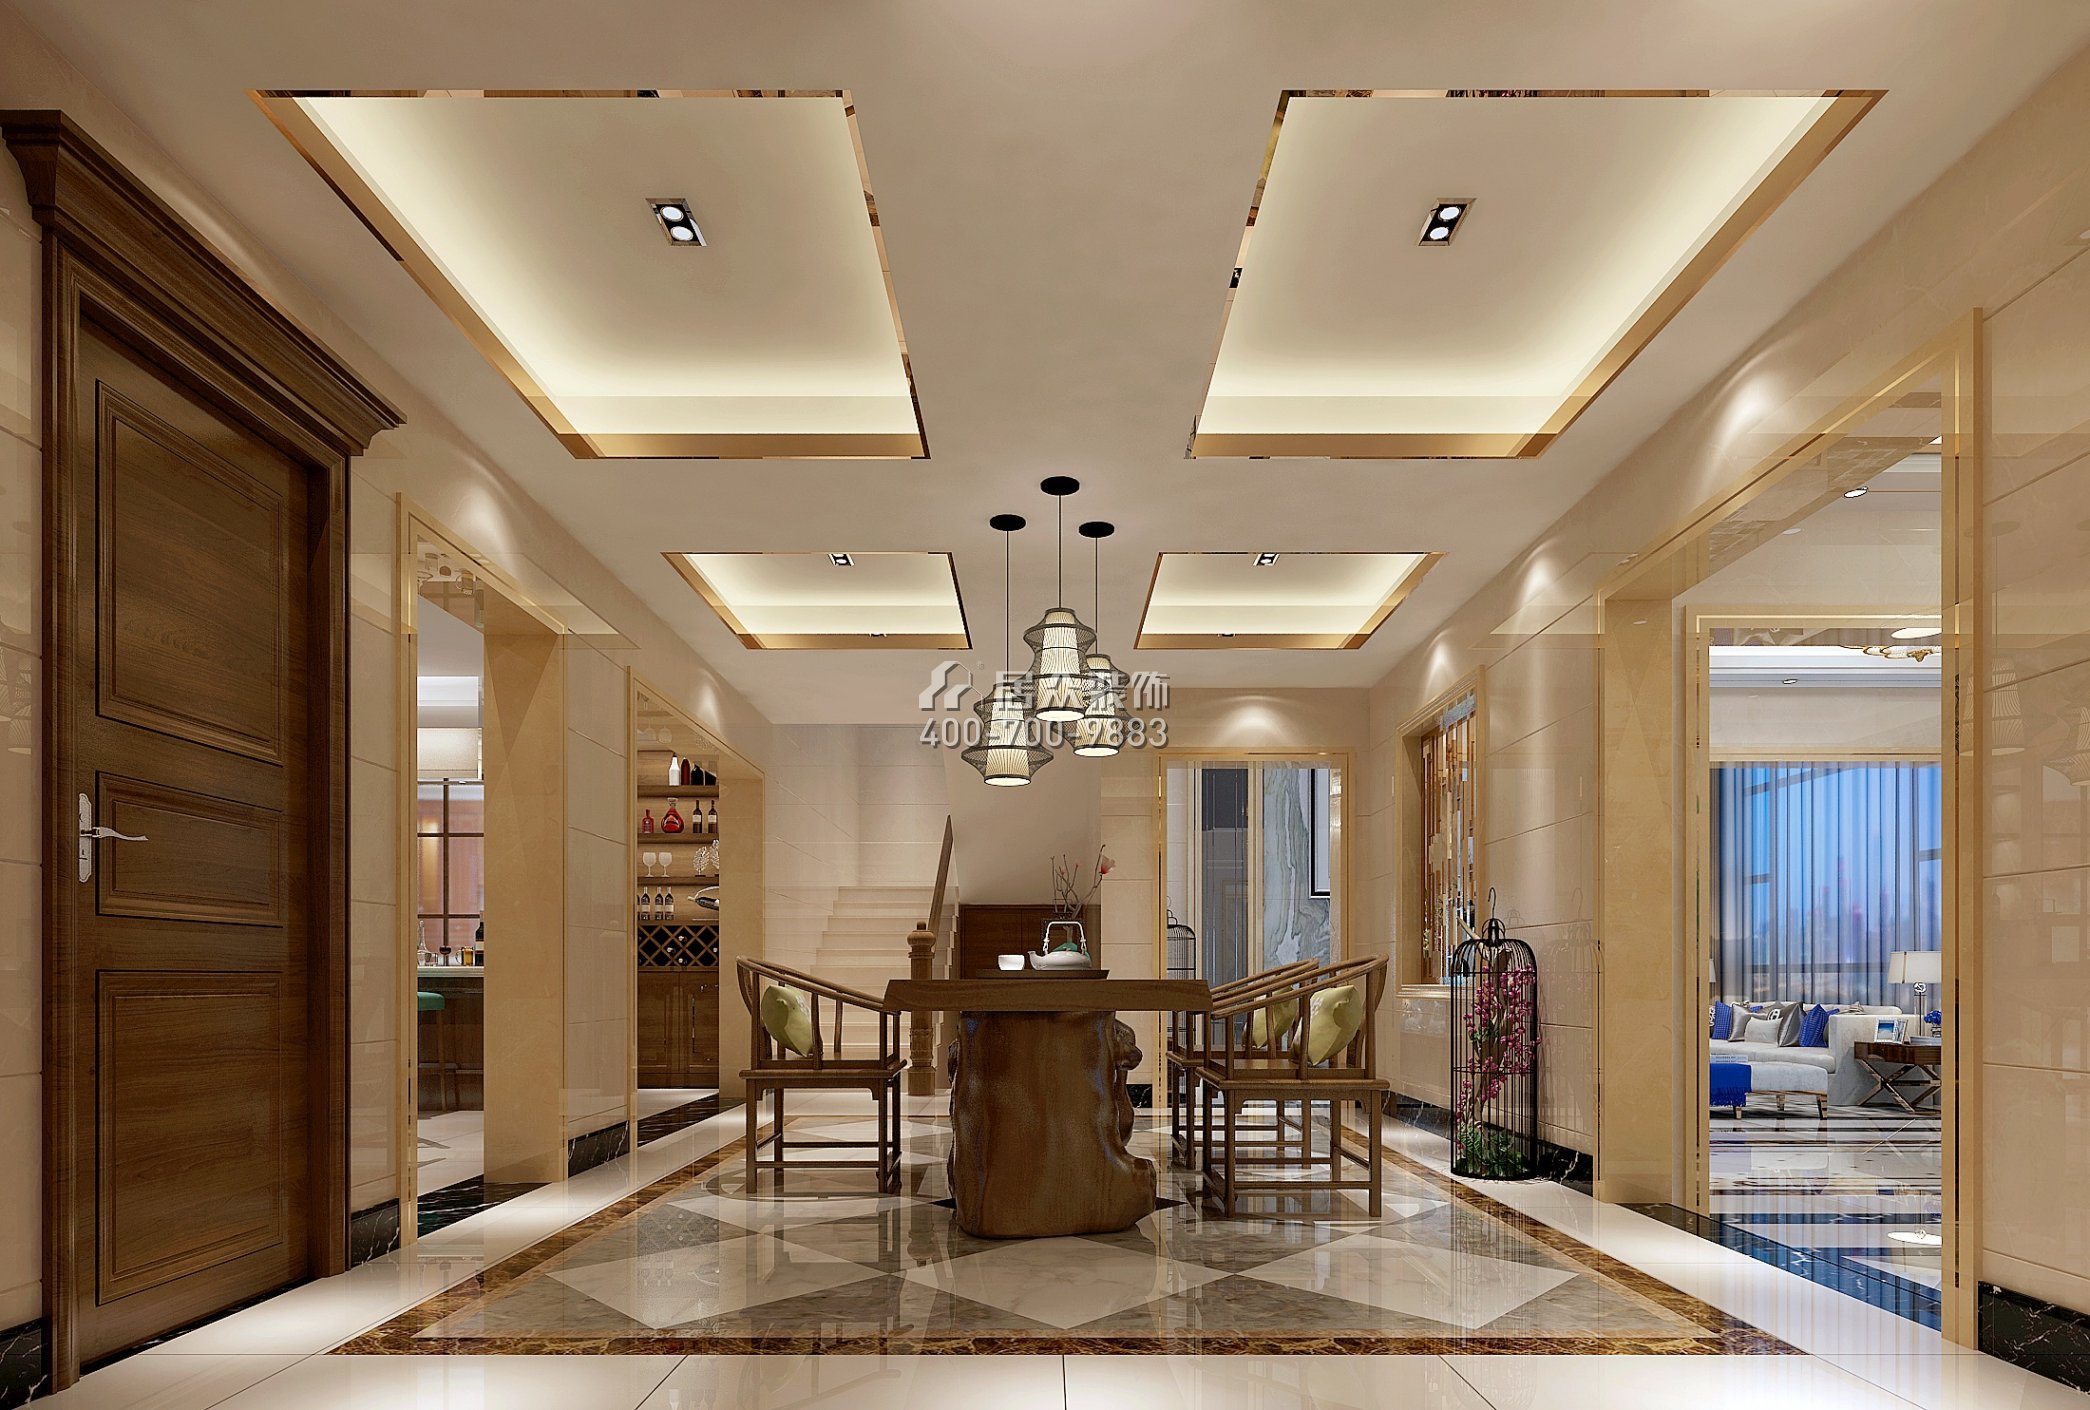 雅宝新城450平方米中式风格别墅户型茶室装修效果图